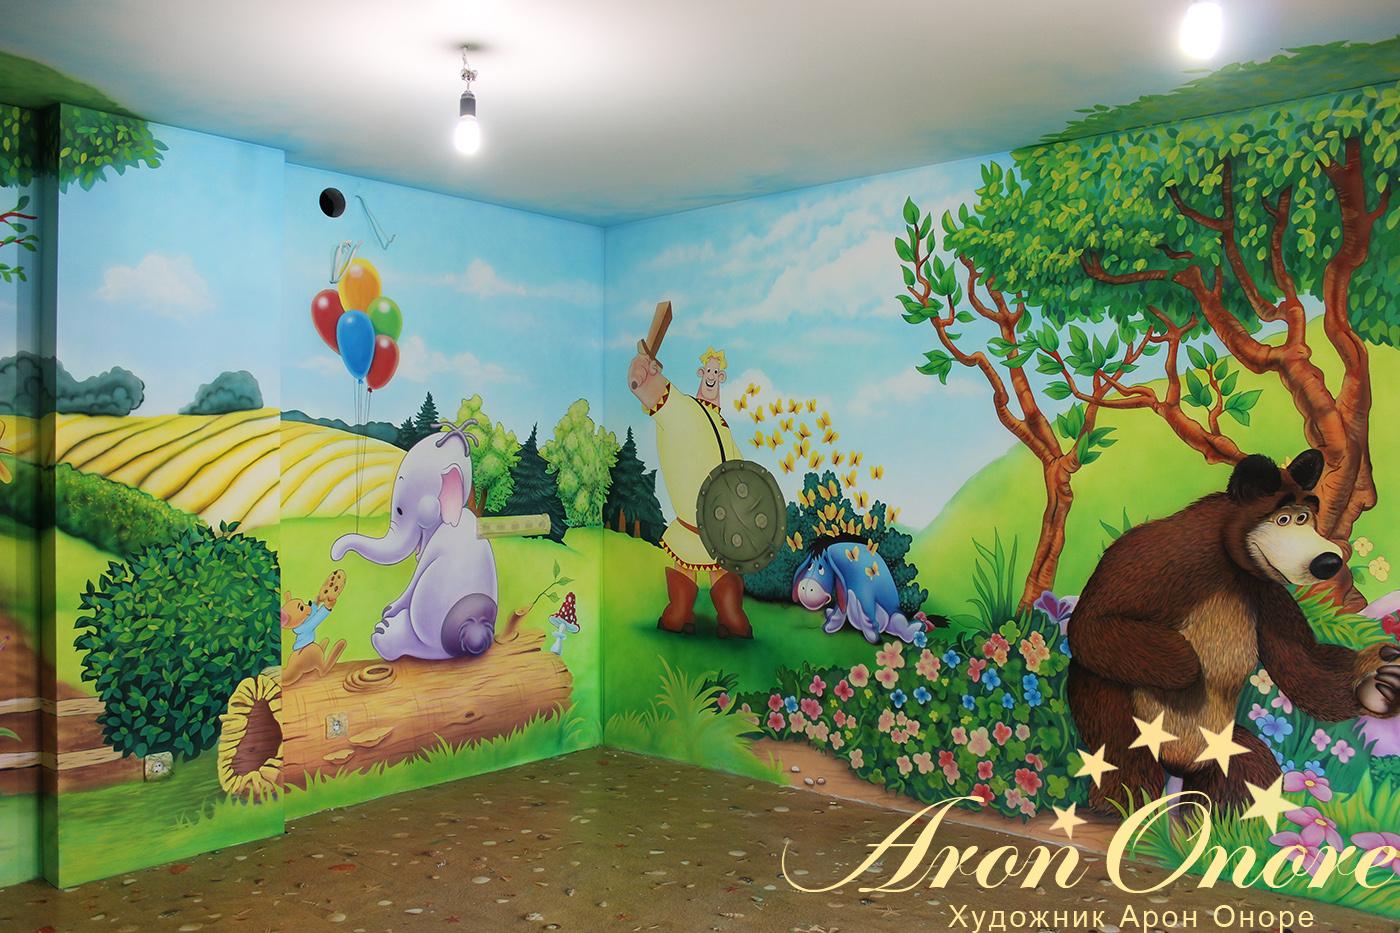 Сказочный рисунок на стене медведь вместе с карлсоном на фоне сказочного леса